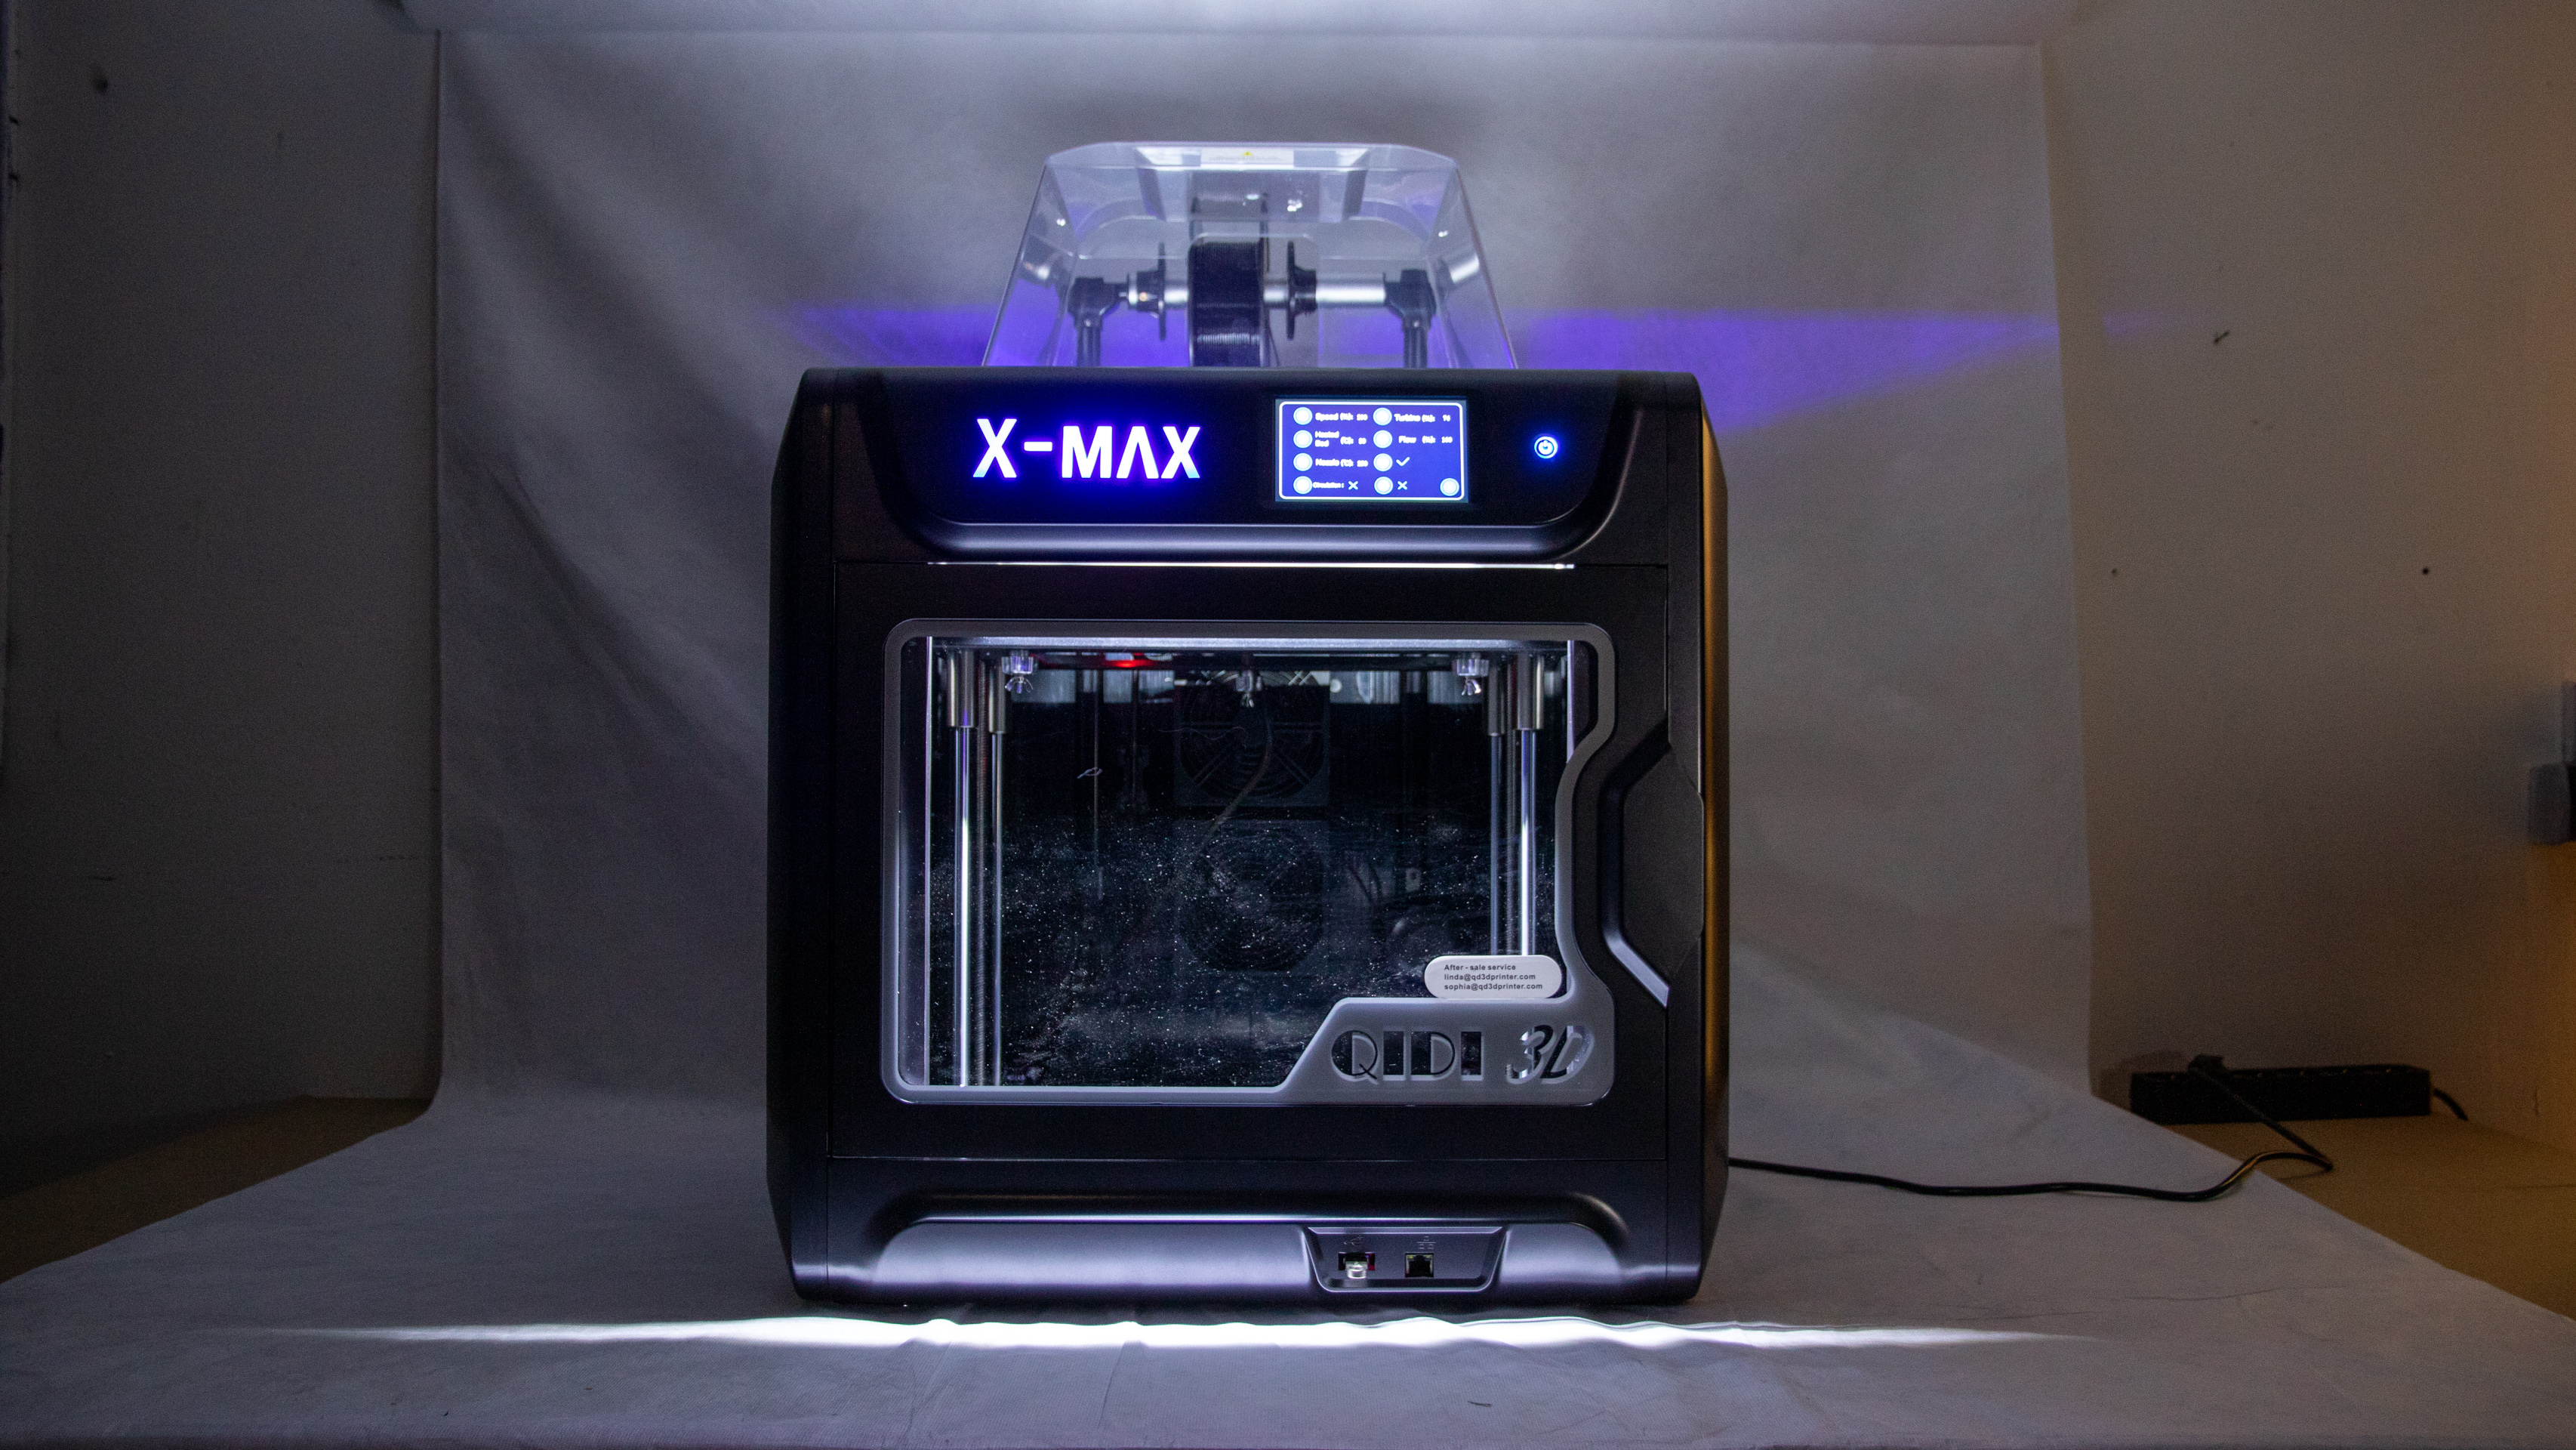 3D-Drucker Qidi X-Max im Test: Fertig aufgebaut und zuverlässig | TechStage